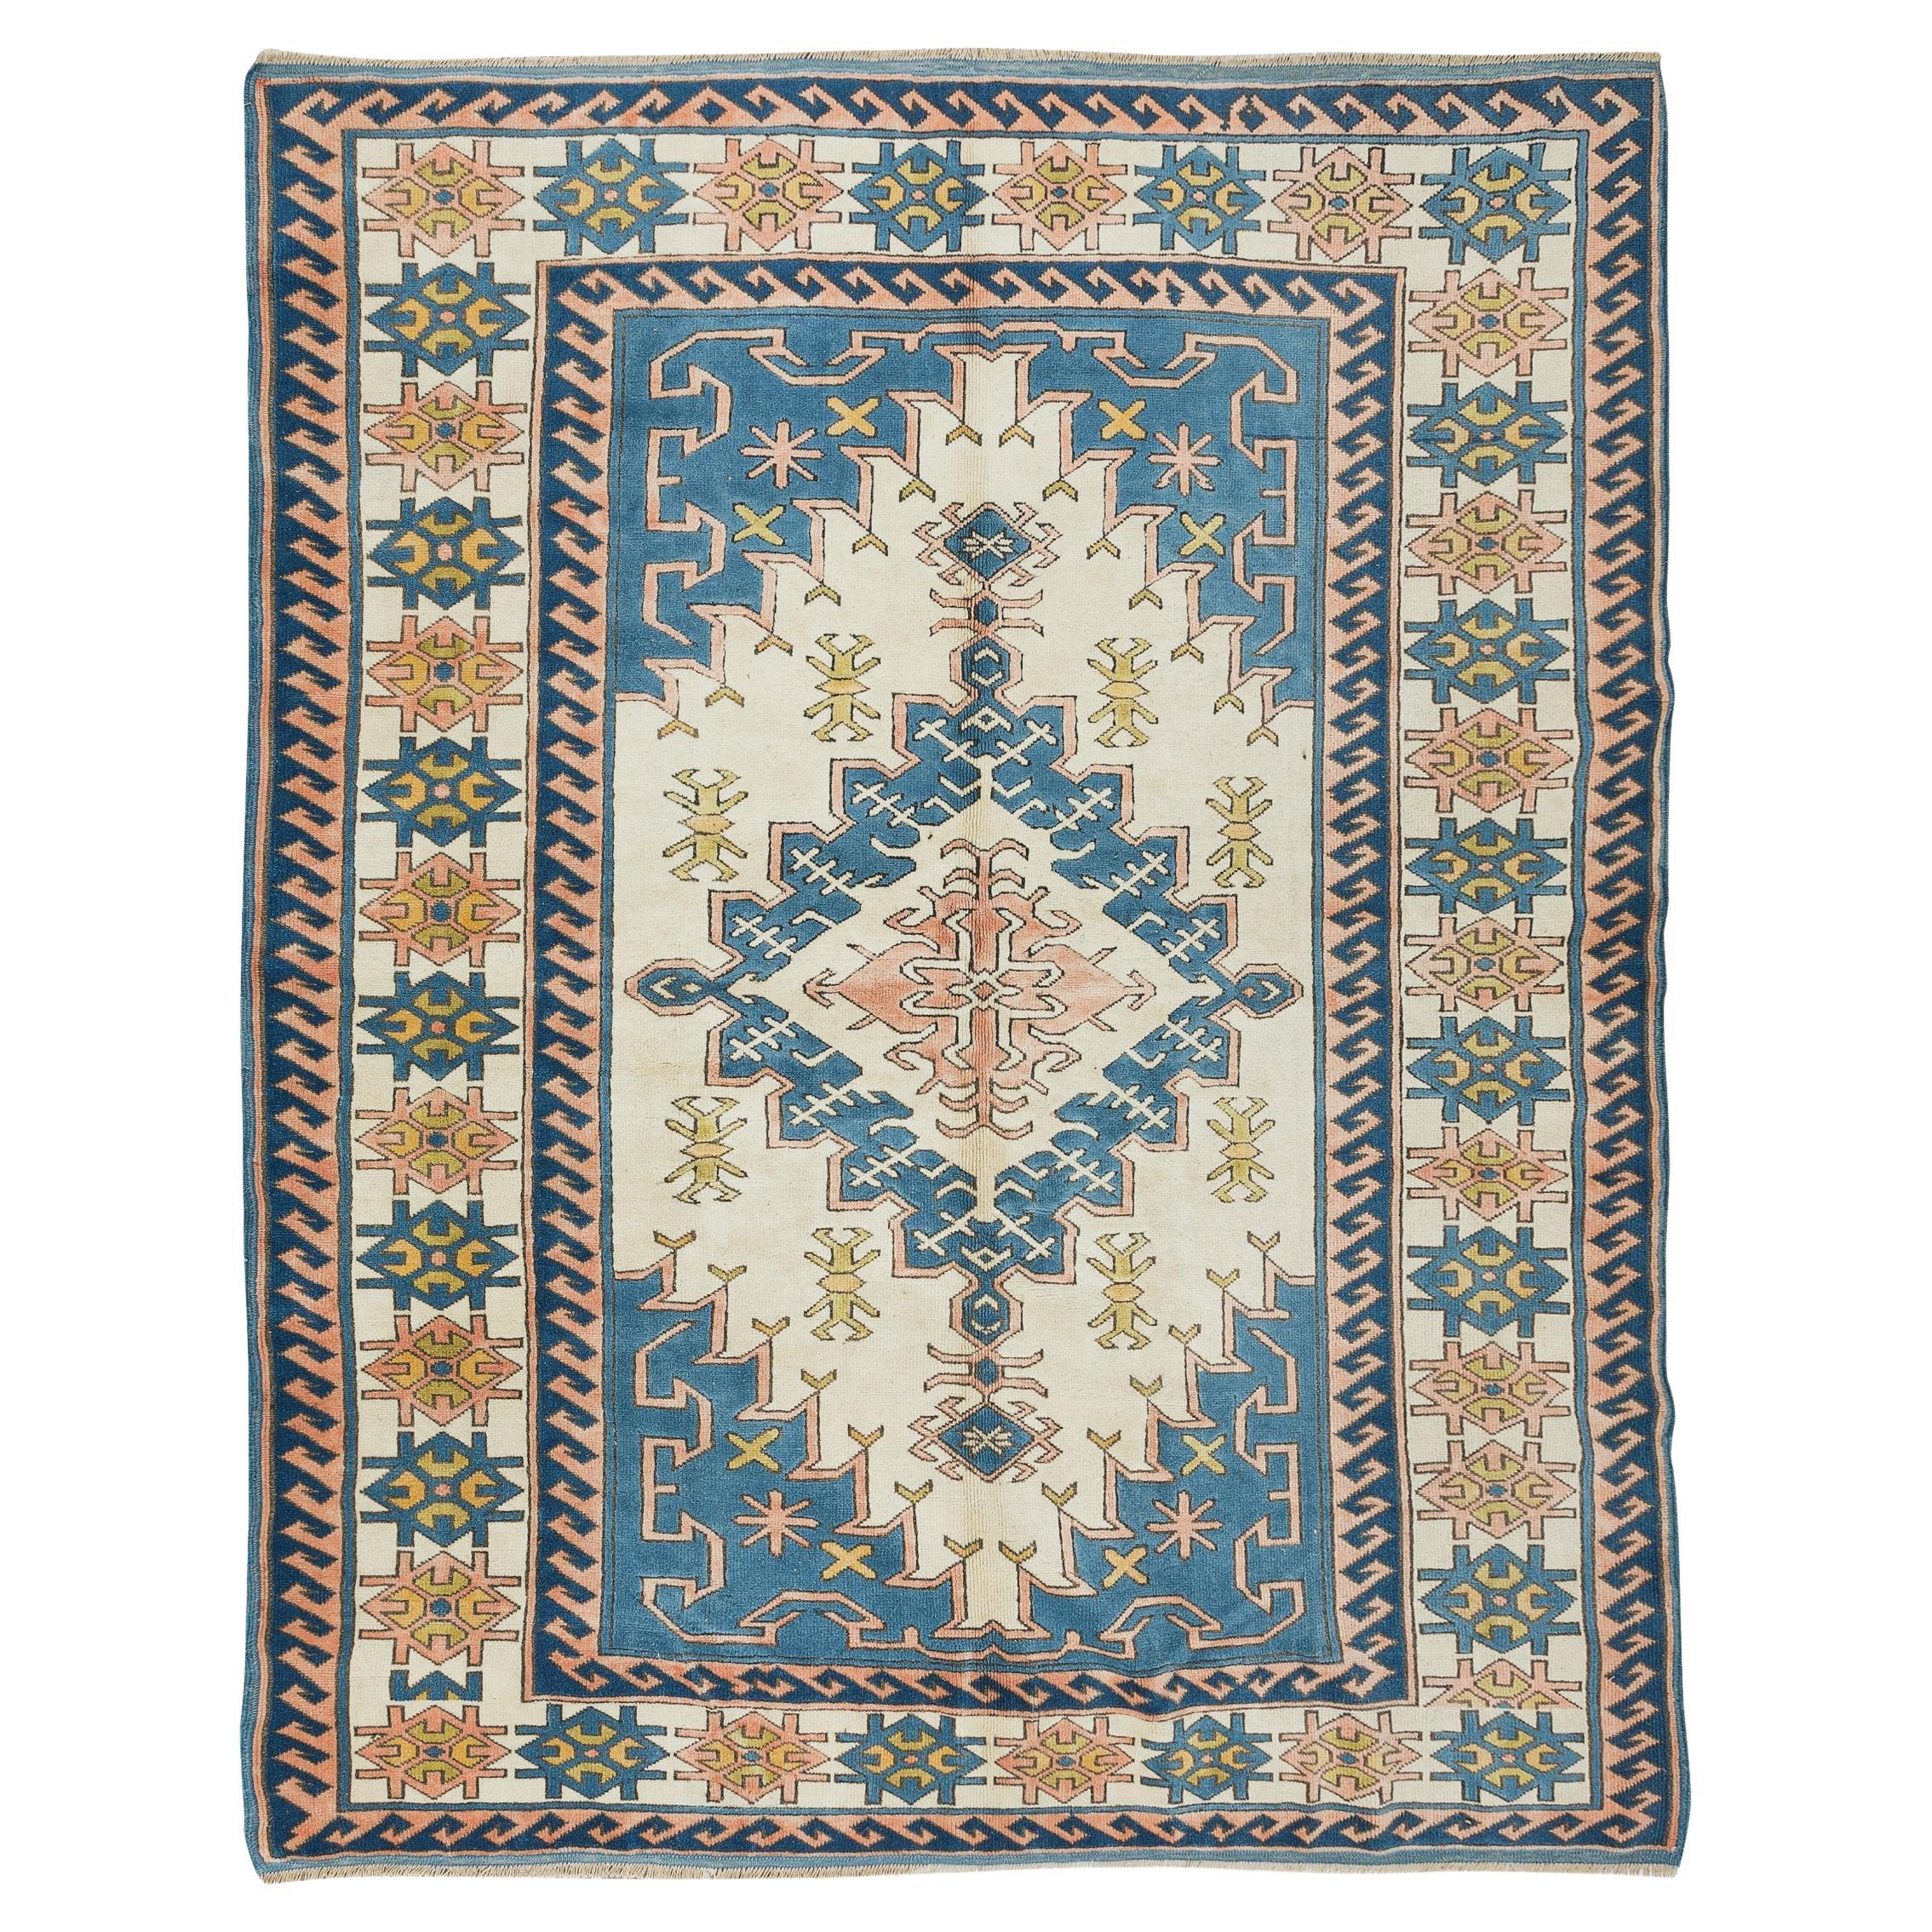 6.9x8.8 Ft Handgefertigter Unikat-Teppich, geometrischer Anatolischer Wollteppich